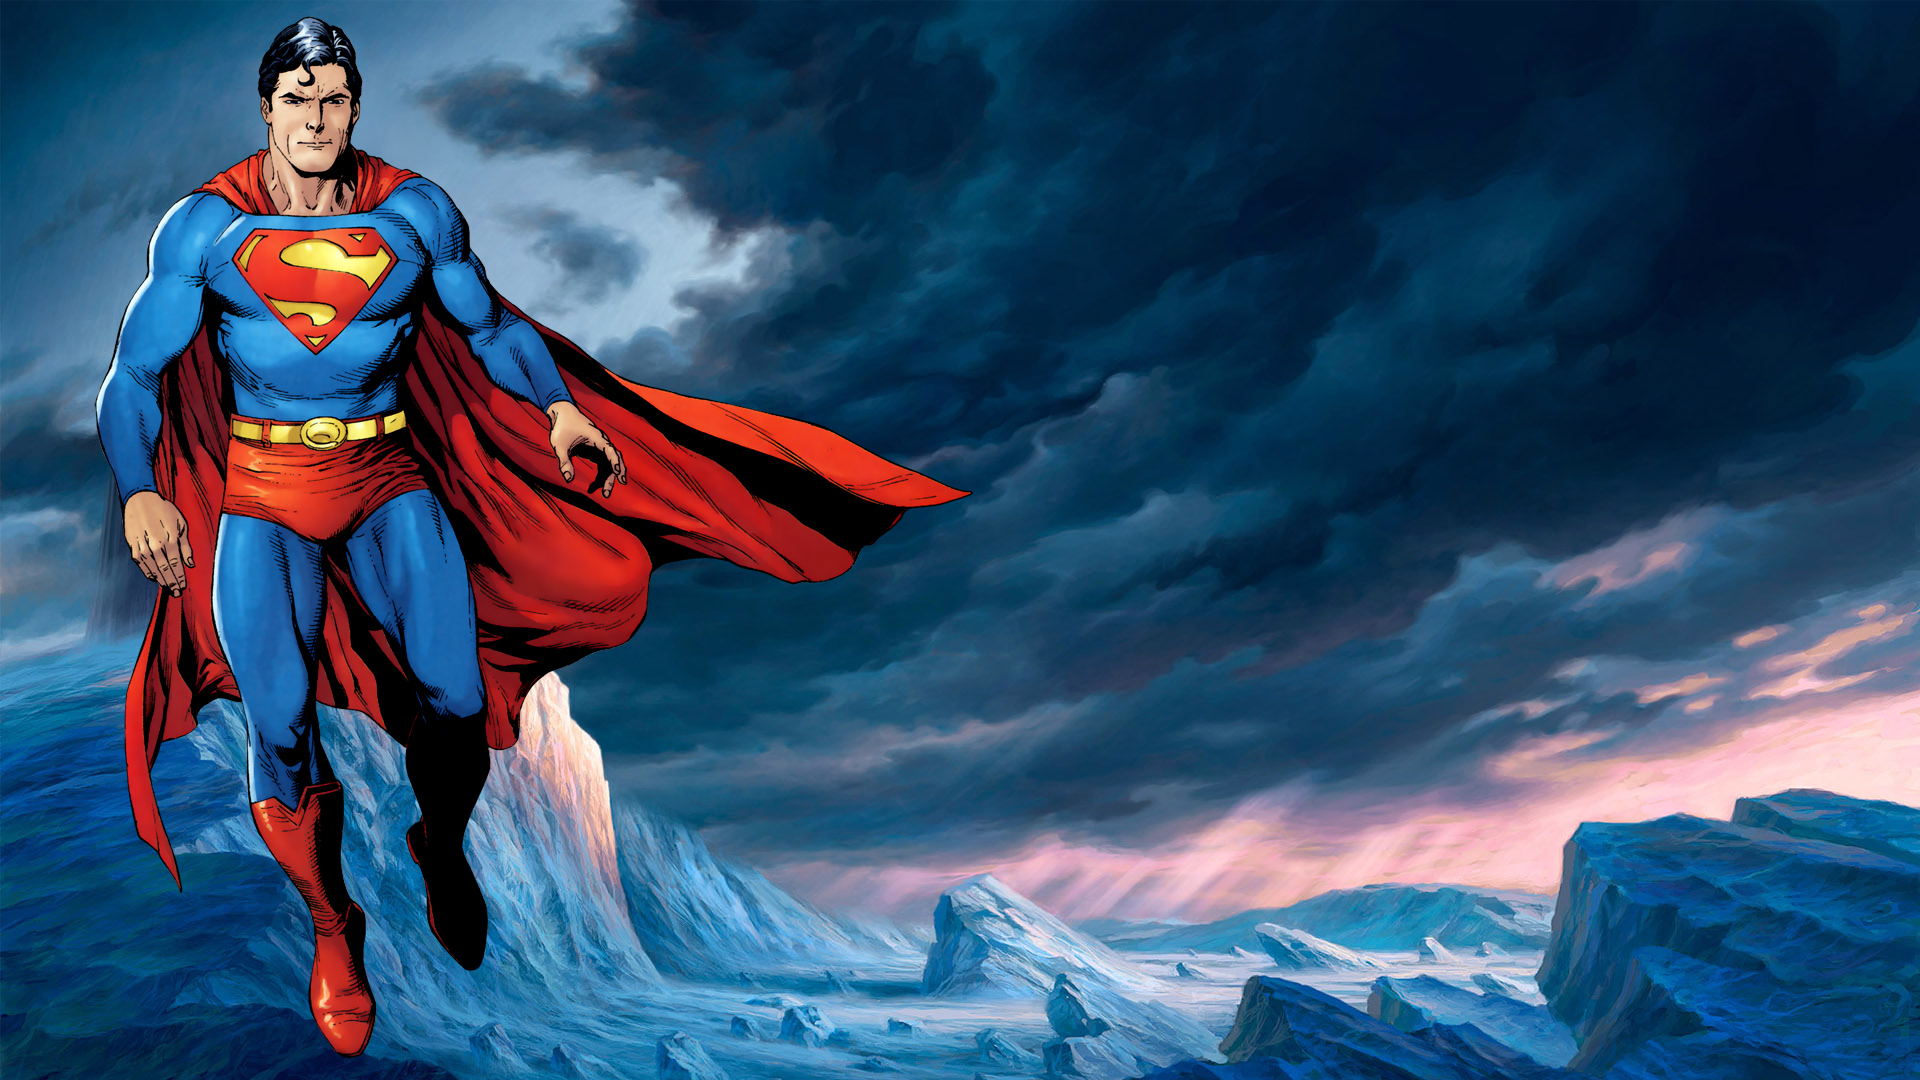 descargar fondos de superman,superhombre,personaje de ficción,superhéroe,liga de la justicia,cg artwork